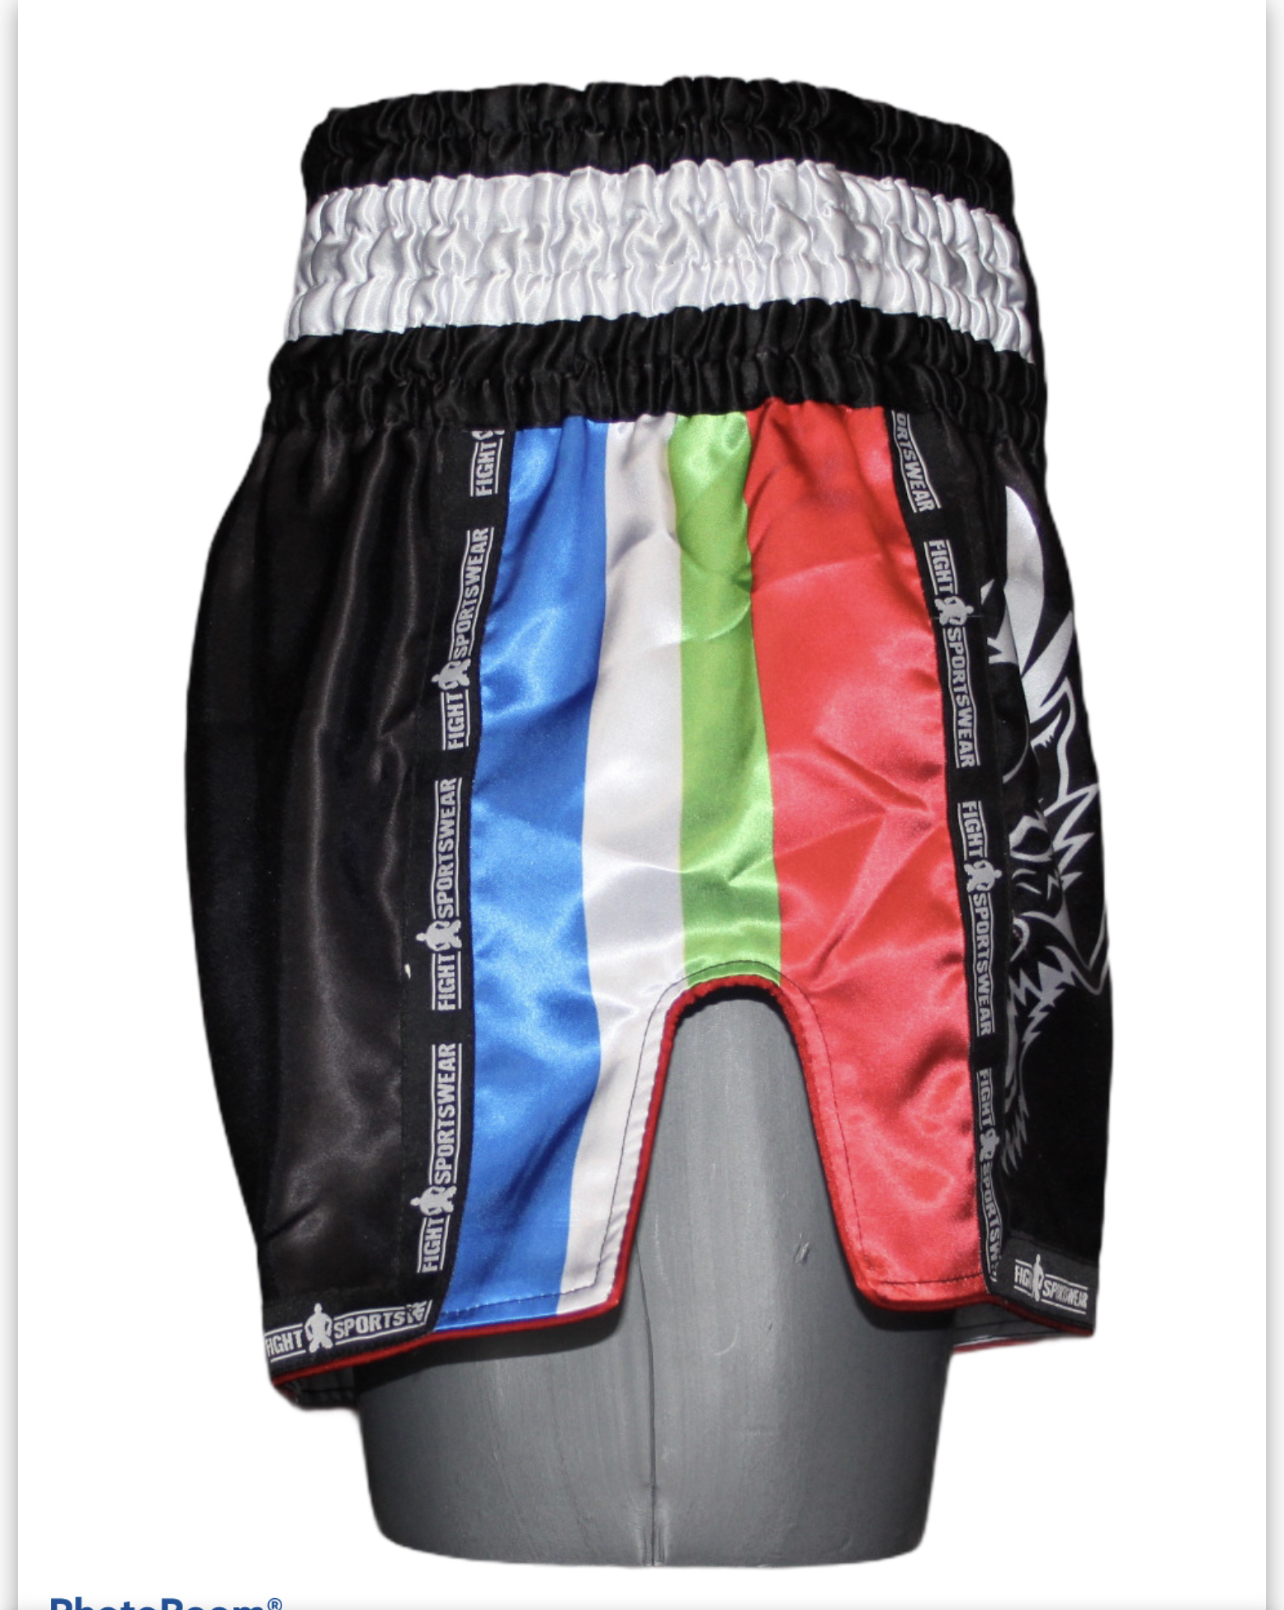 Voordracht Legacy vermogen kickboks broekjes Molukse vlag - Sportwear for Fighters